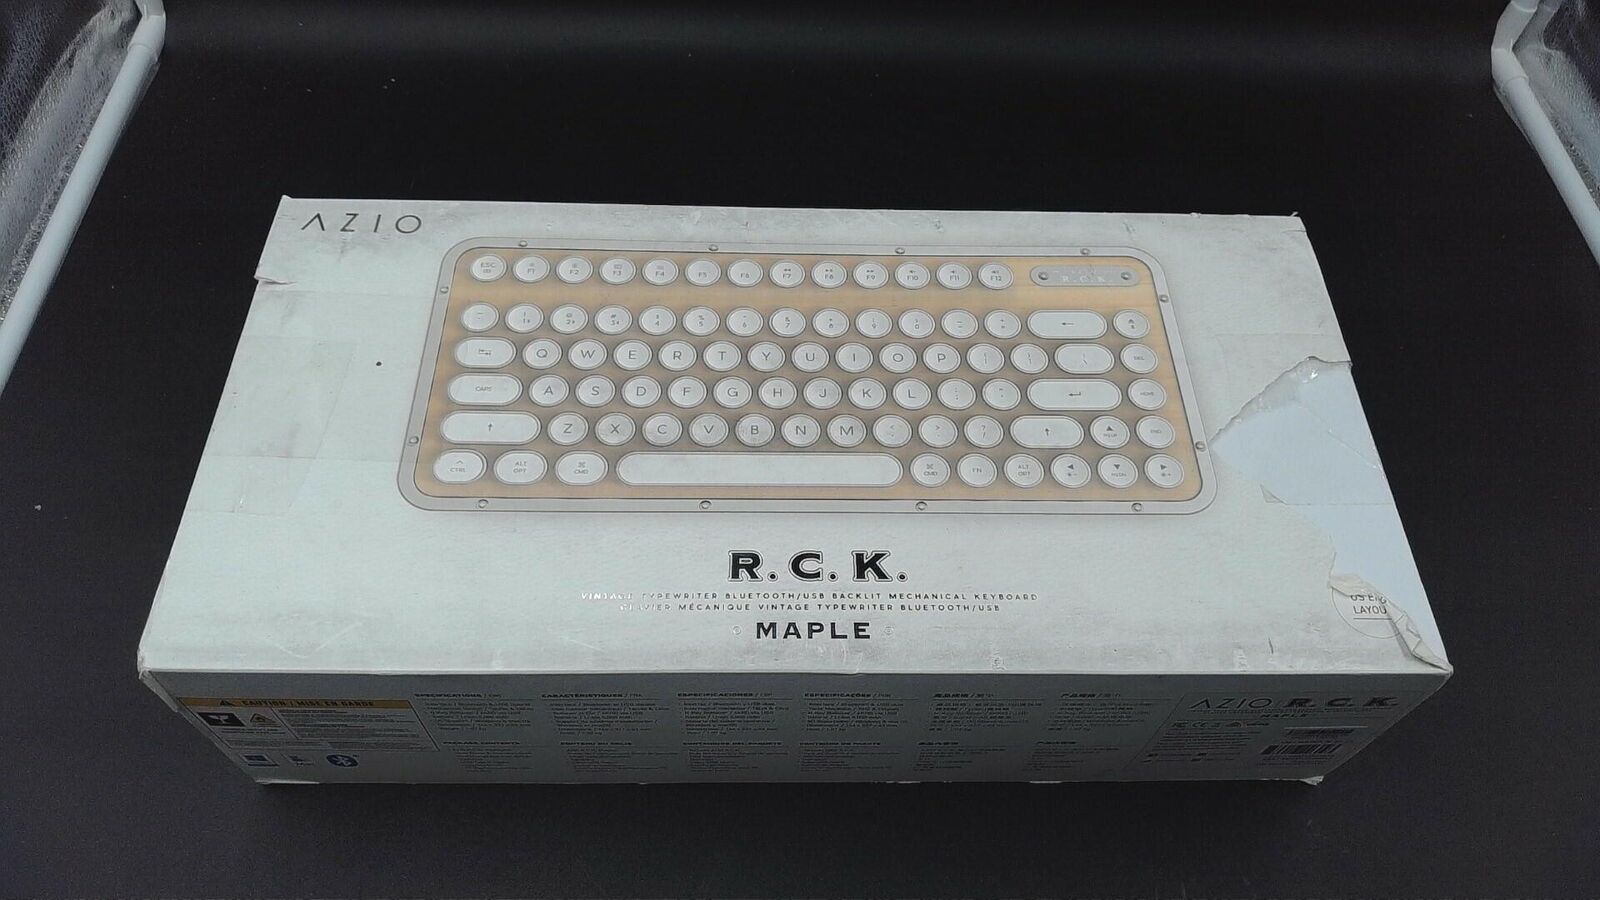 Azio Retro Compact Keyboard, Maple